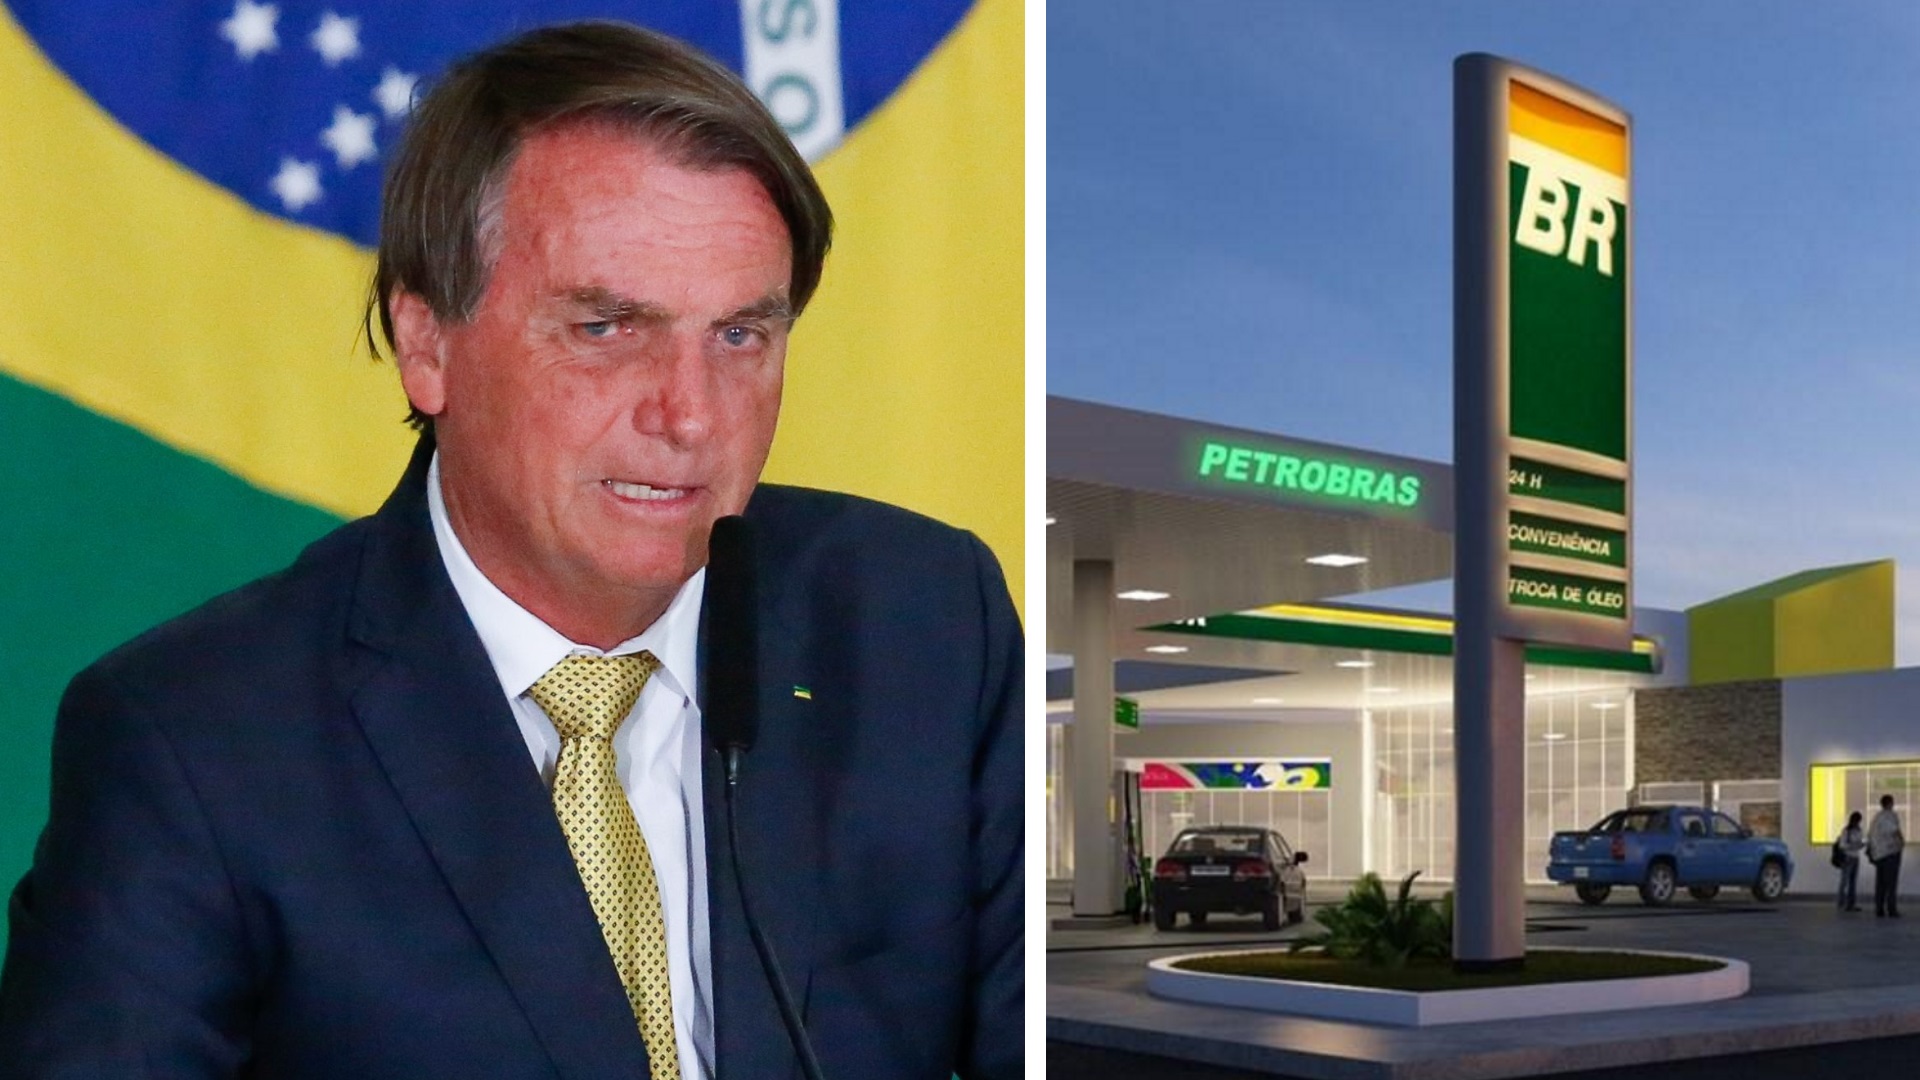 Montagem com a imagem de Bolsonaro e de um posto de combustível